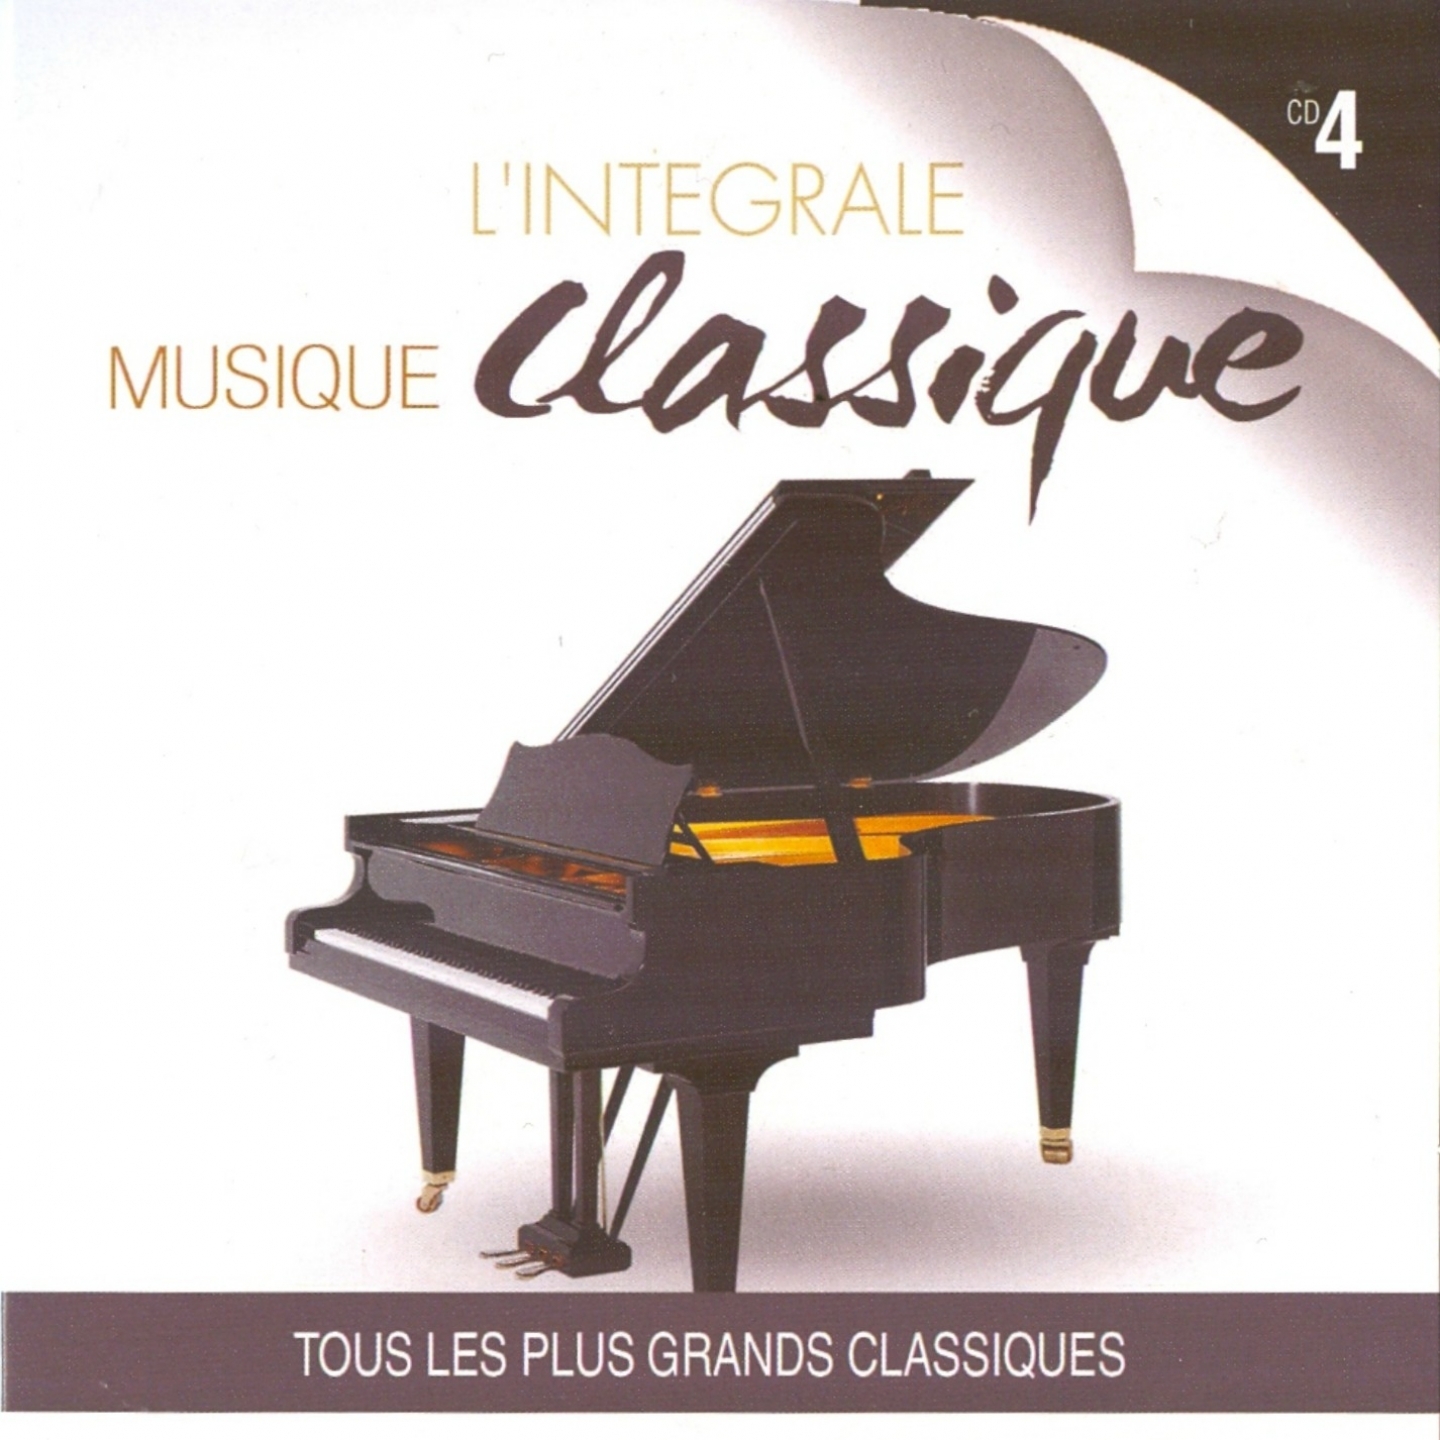 Musique classique : L' inte grale, vol. 4